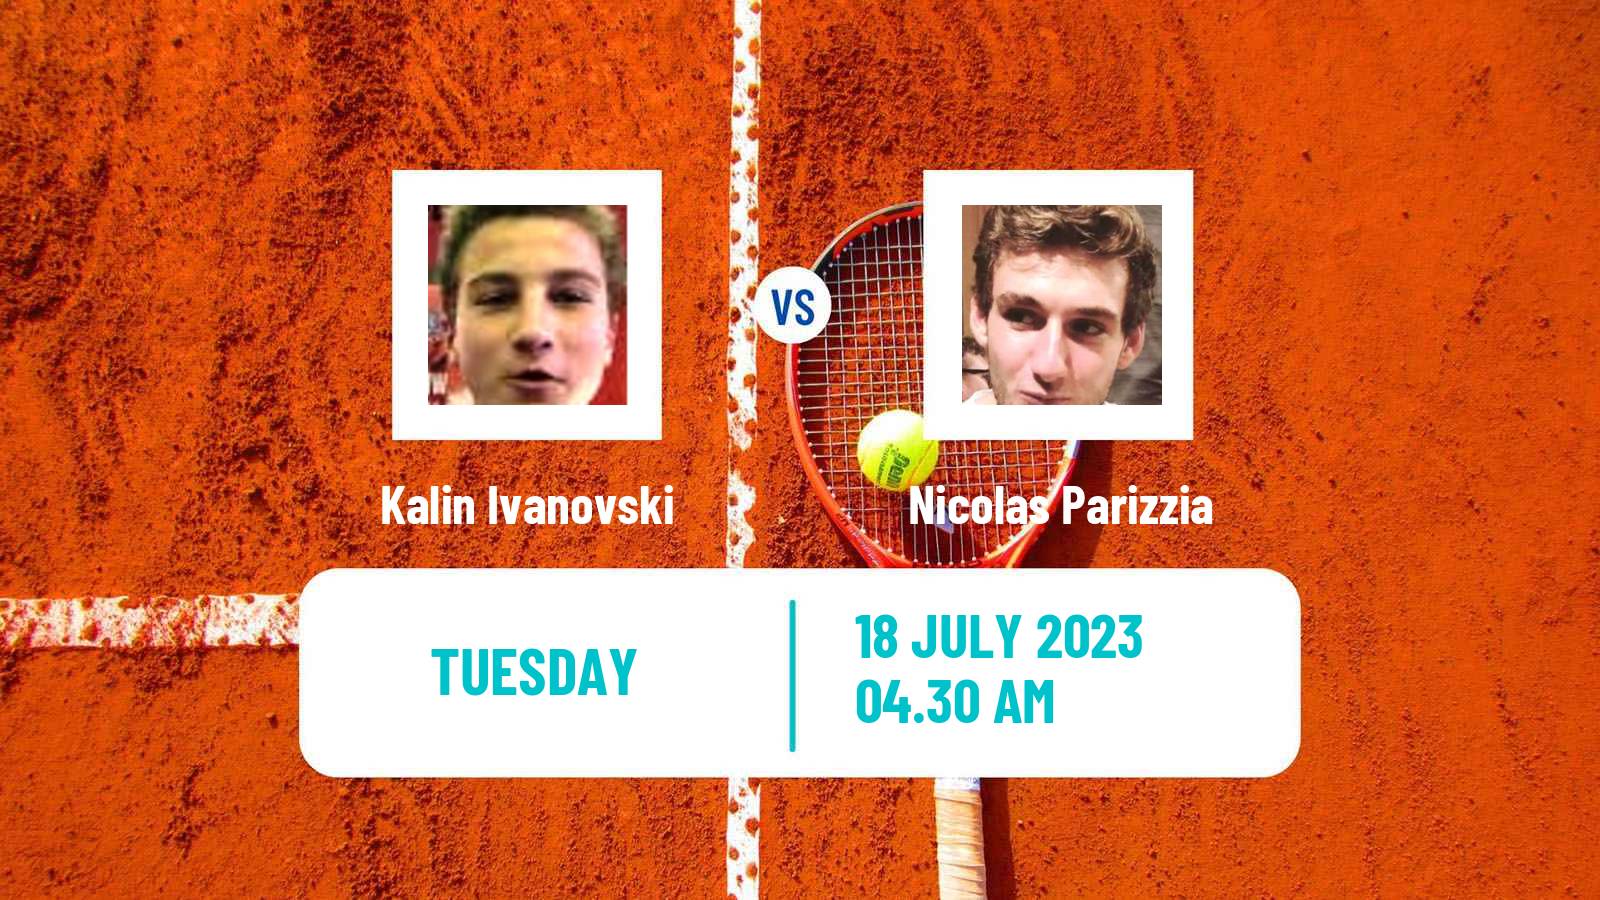 Tennis ITF M25 Telfs Men Kalin Ivanovski - Nicolas Parizzia